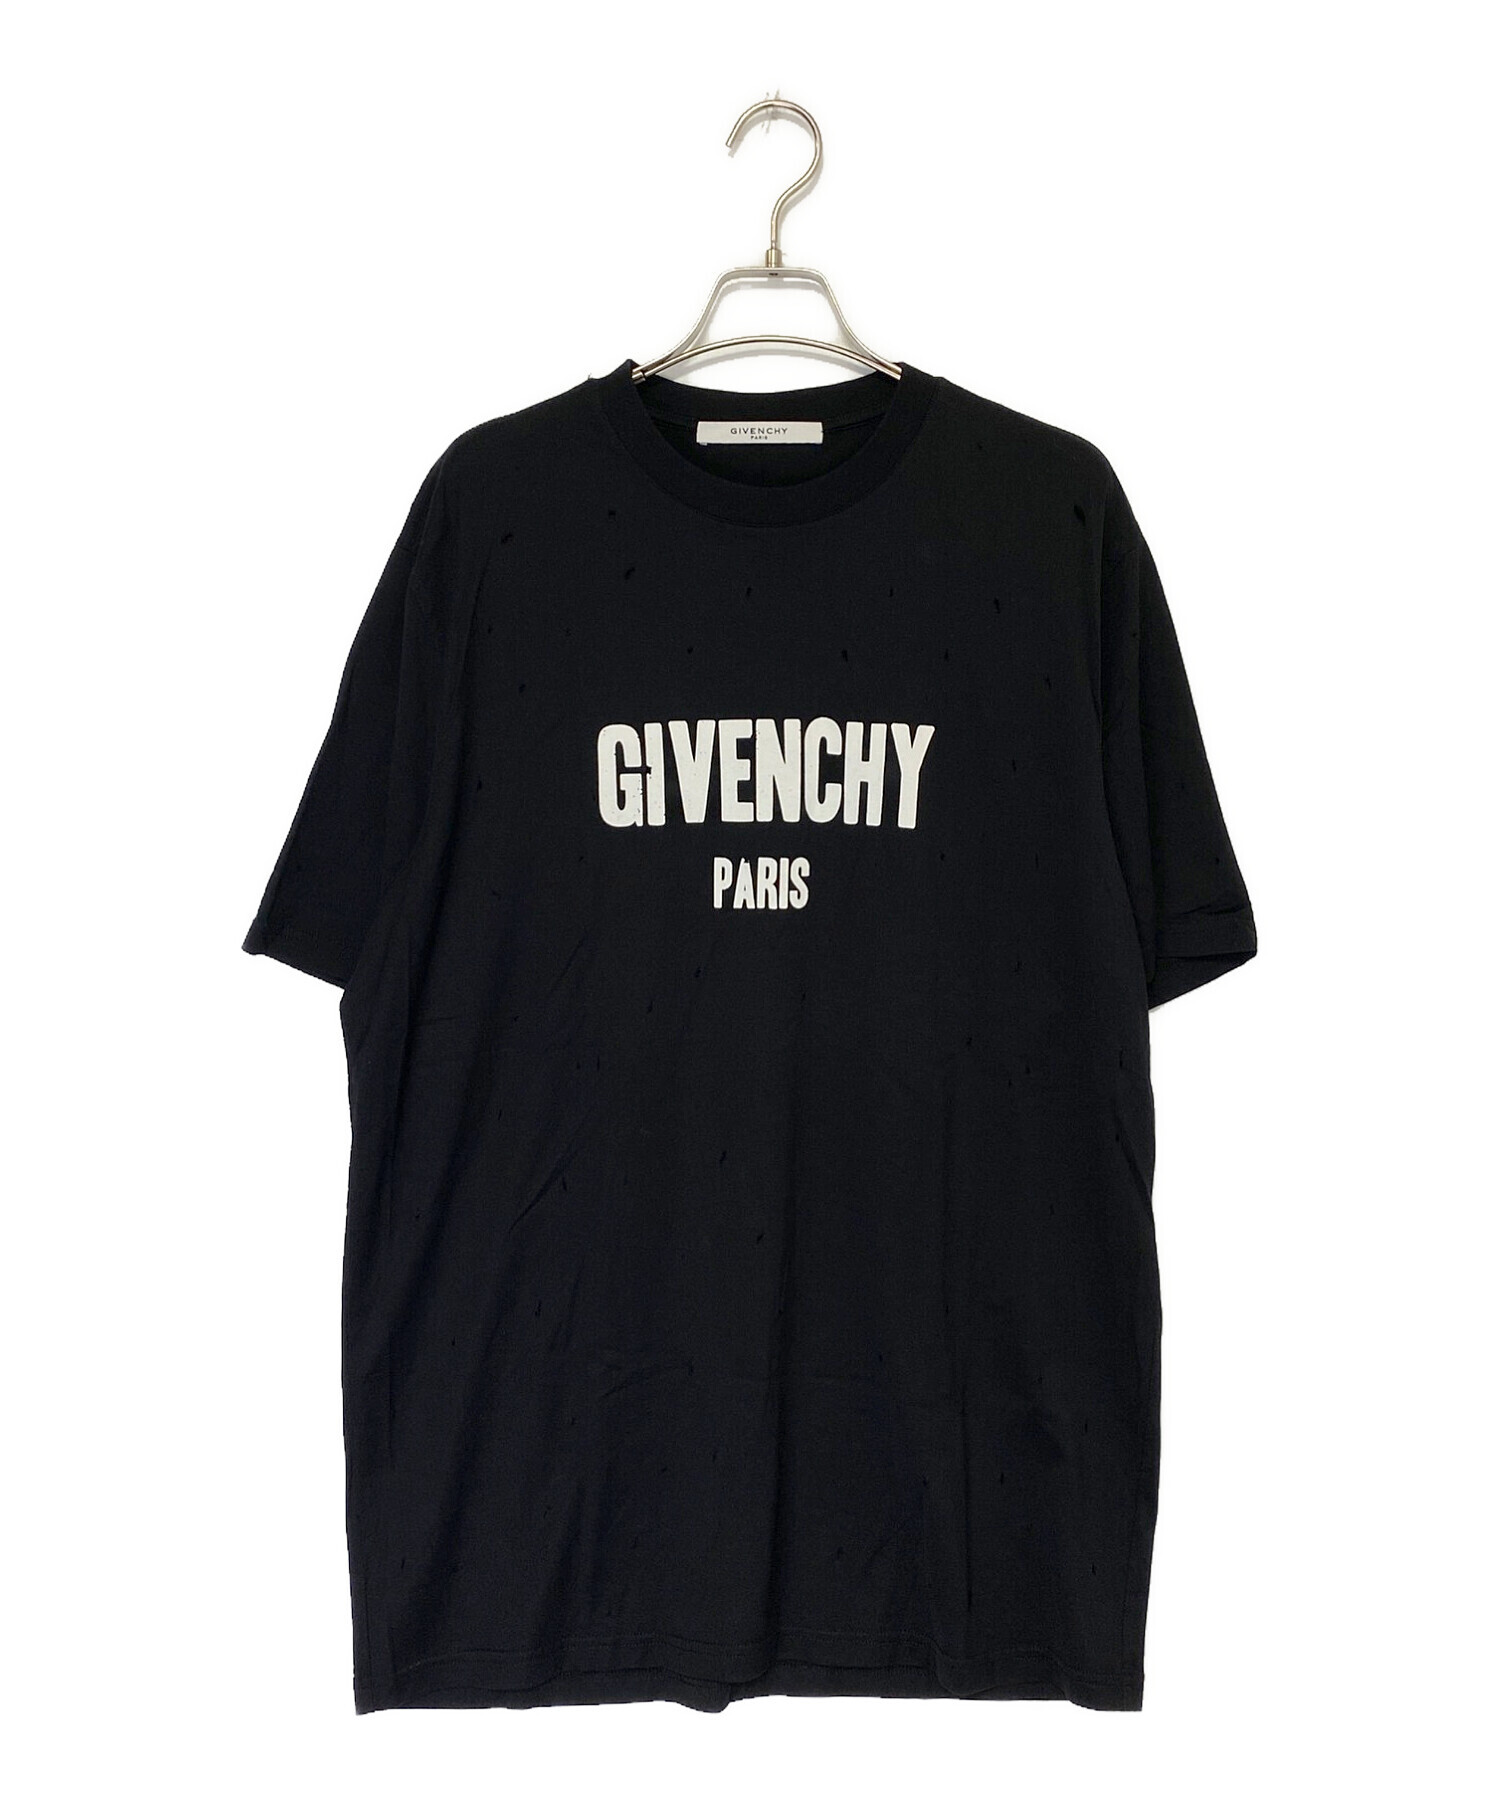 GIVENCHY (ジバンシィ) Destroyed Crewneck T-shirt ブラック サイズ:M